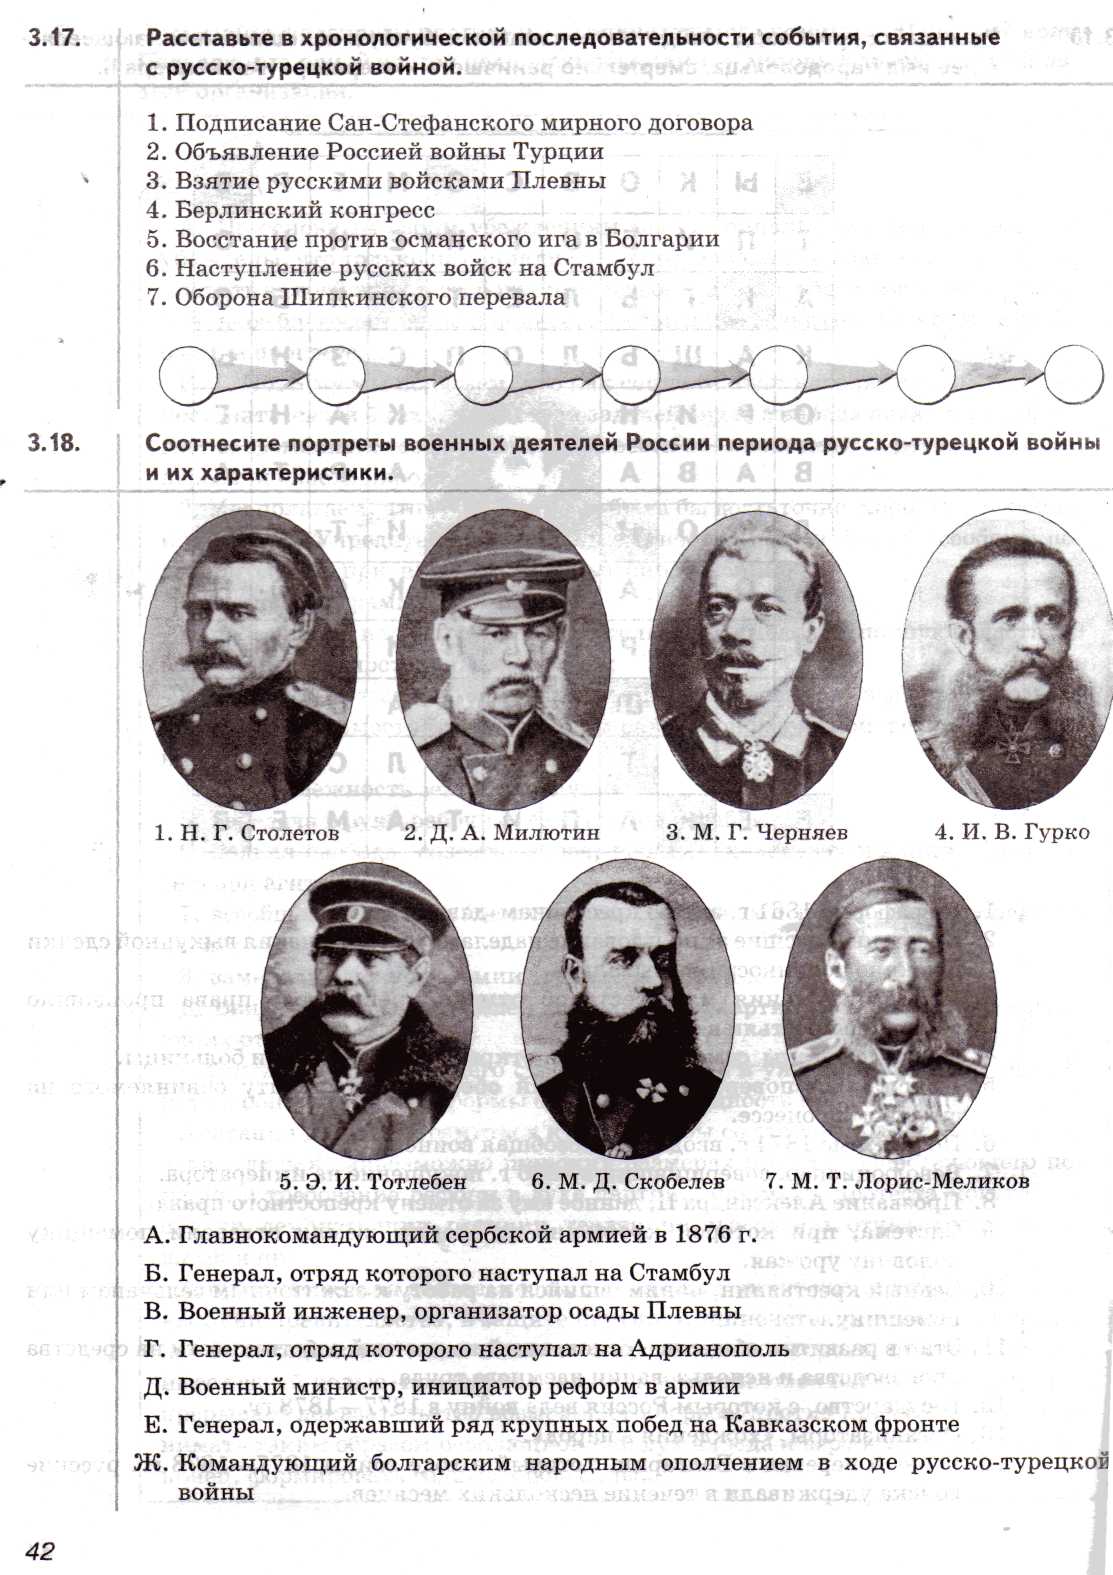 Конспект урока Русско-турецкая война 1877-1878 гг Интегрированный урок истории в 8 классе